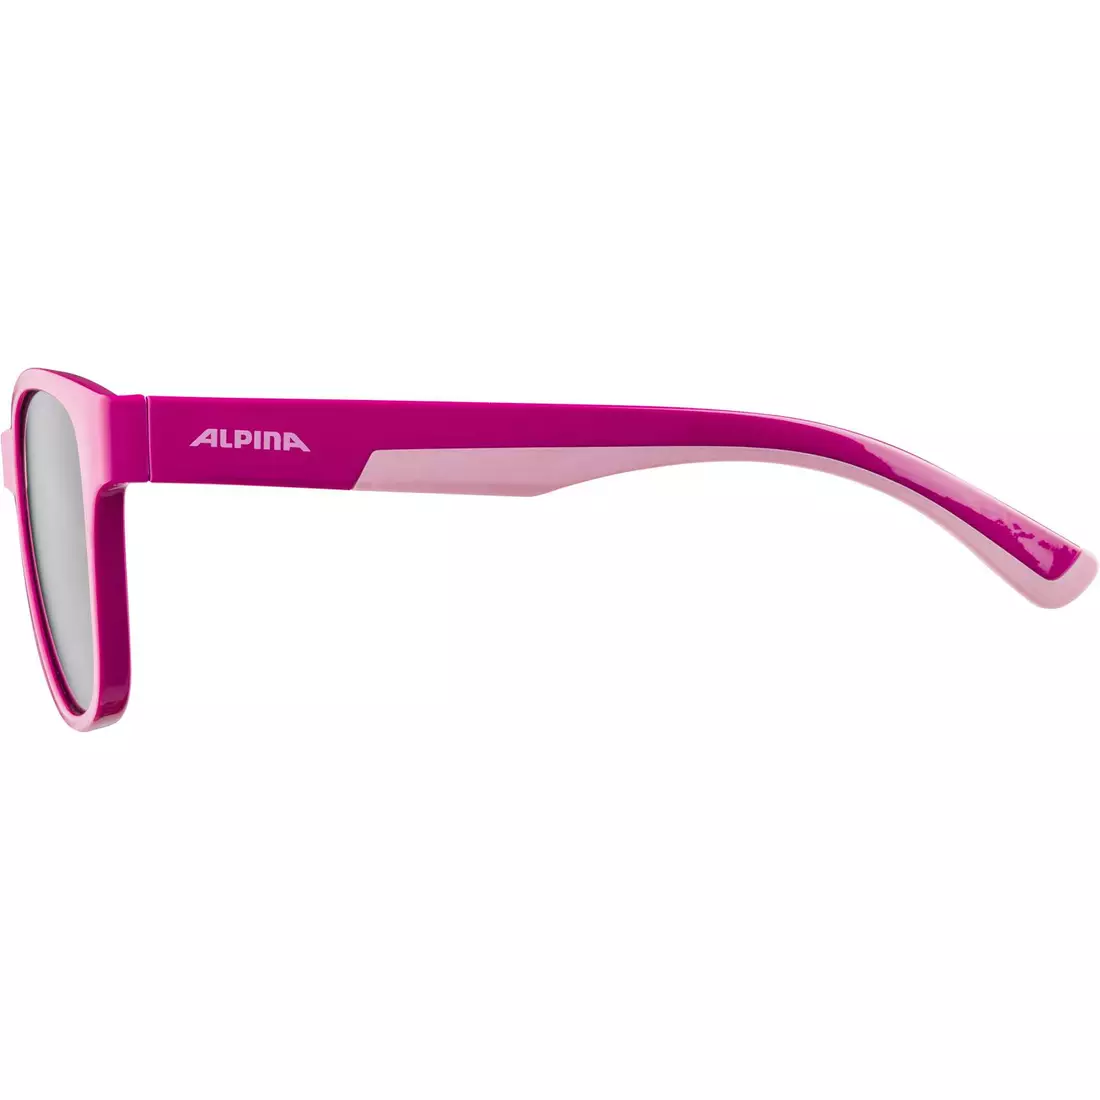 ALPINA FLEXXY COOL KIDS II detské cyklistické/športové okuliare, pink-rose gloss